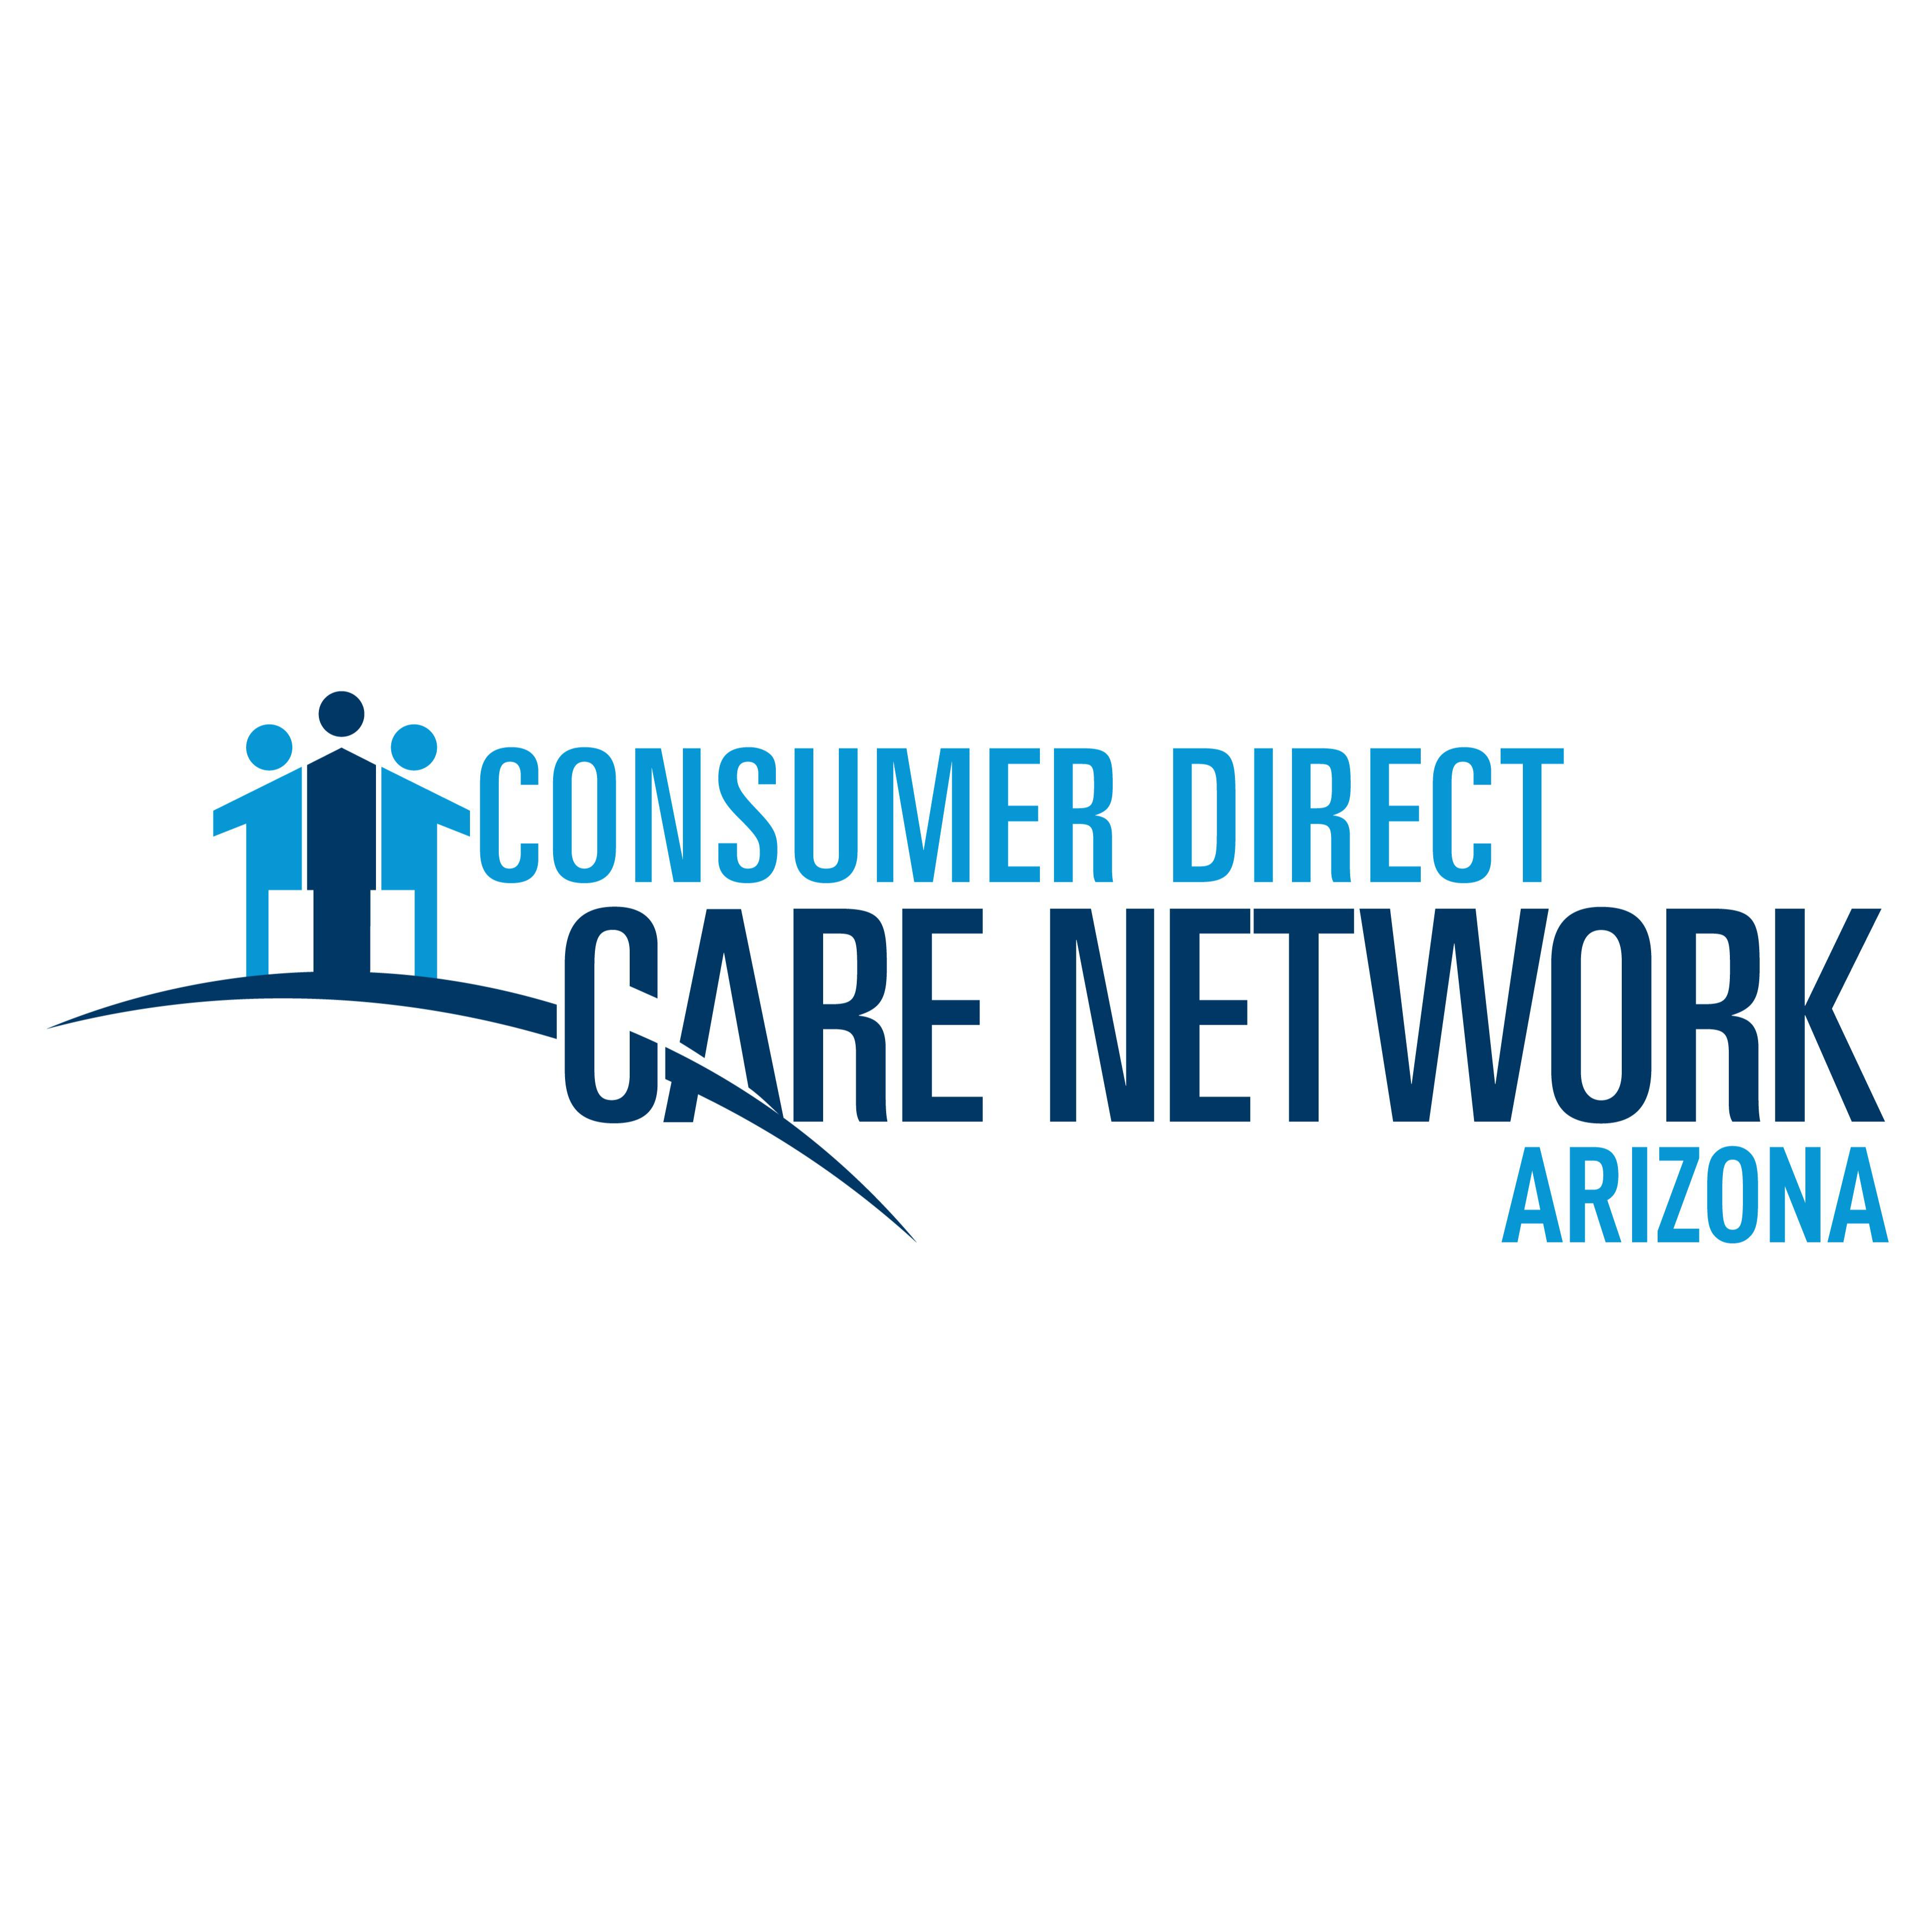 Consumer Direct Care Network Arizona